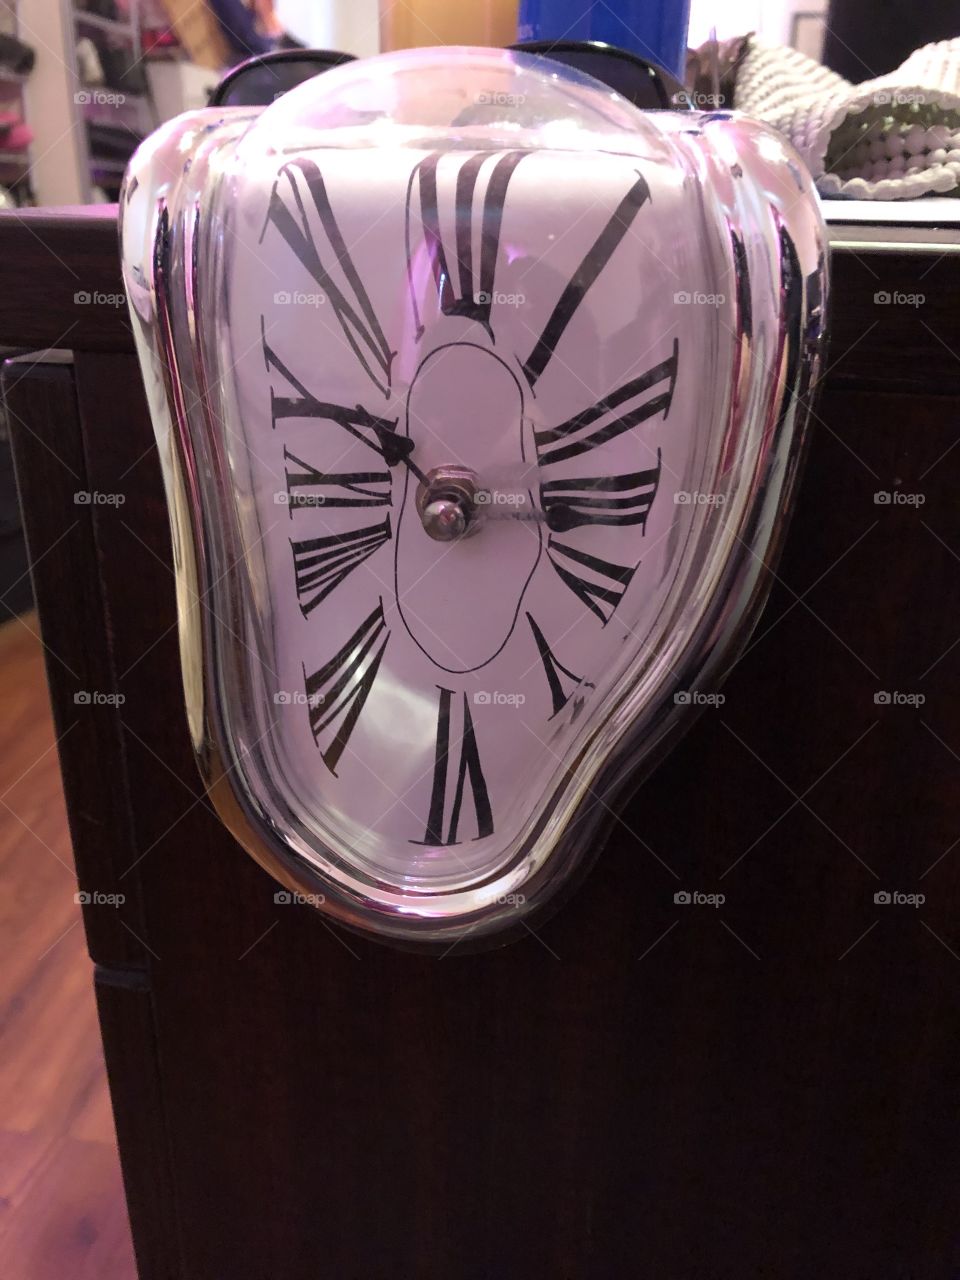 Surreal Salvador Dali clock.